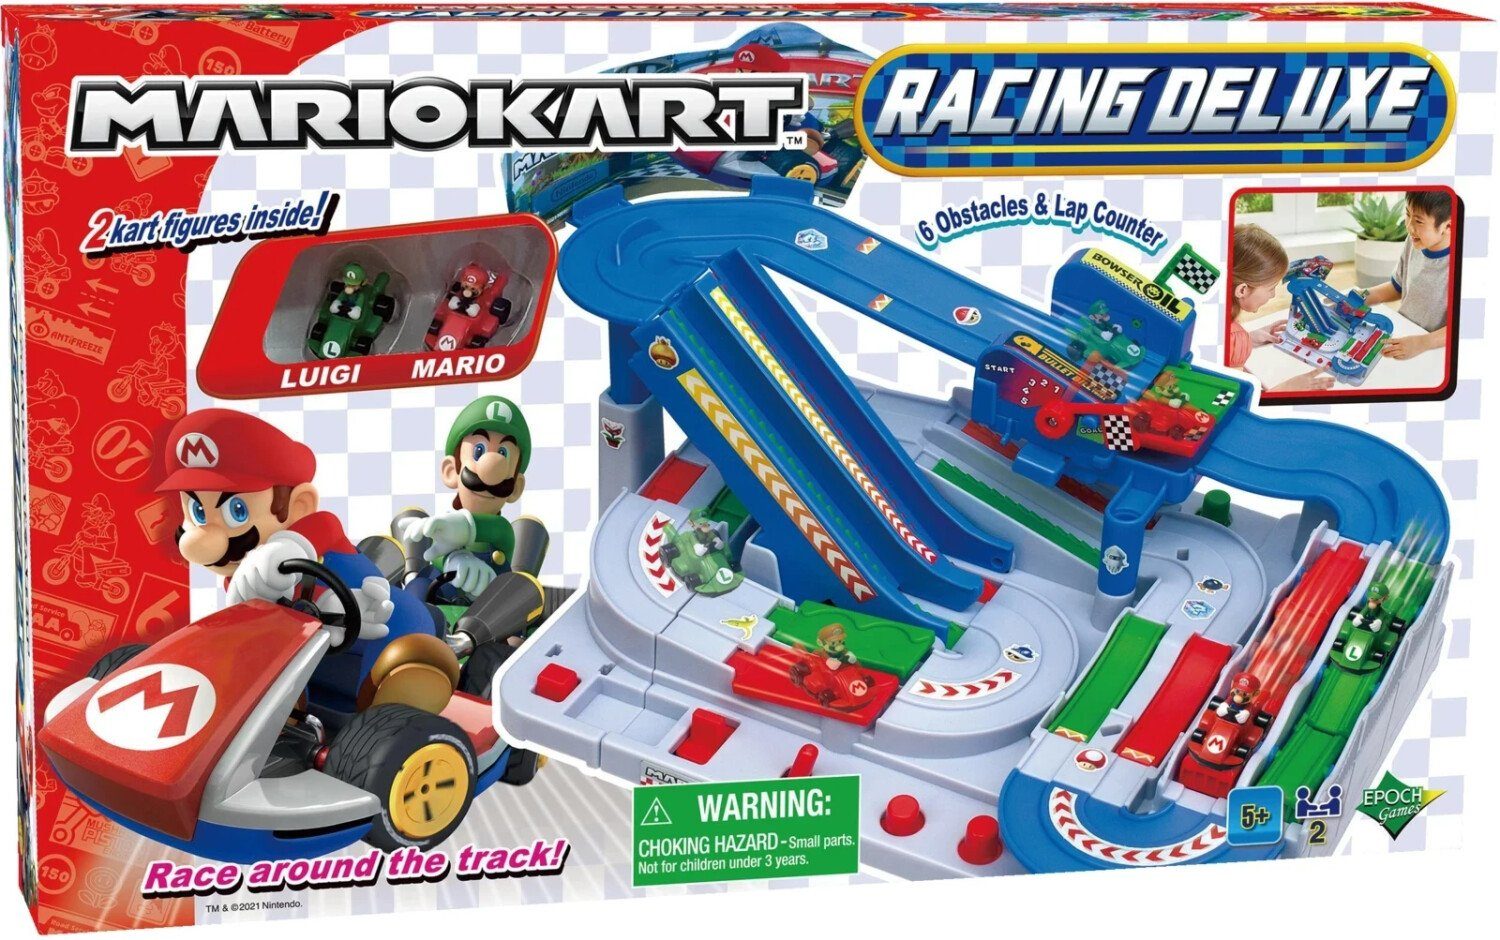 Spiel, Racing Deluxe" Super Kinderspiel "Kart Spieler EPOCH 2 Mario Action-Rennspiel Games